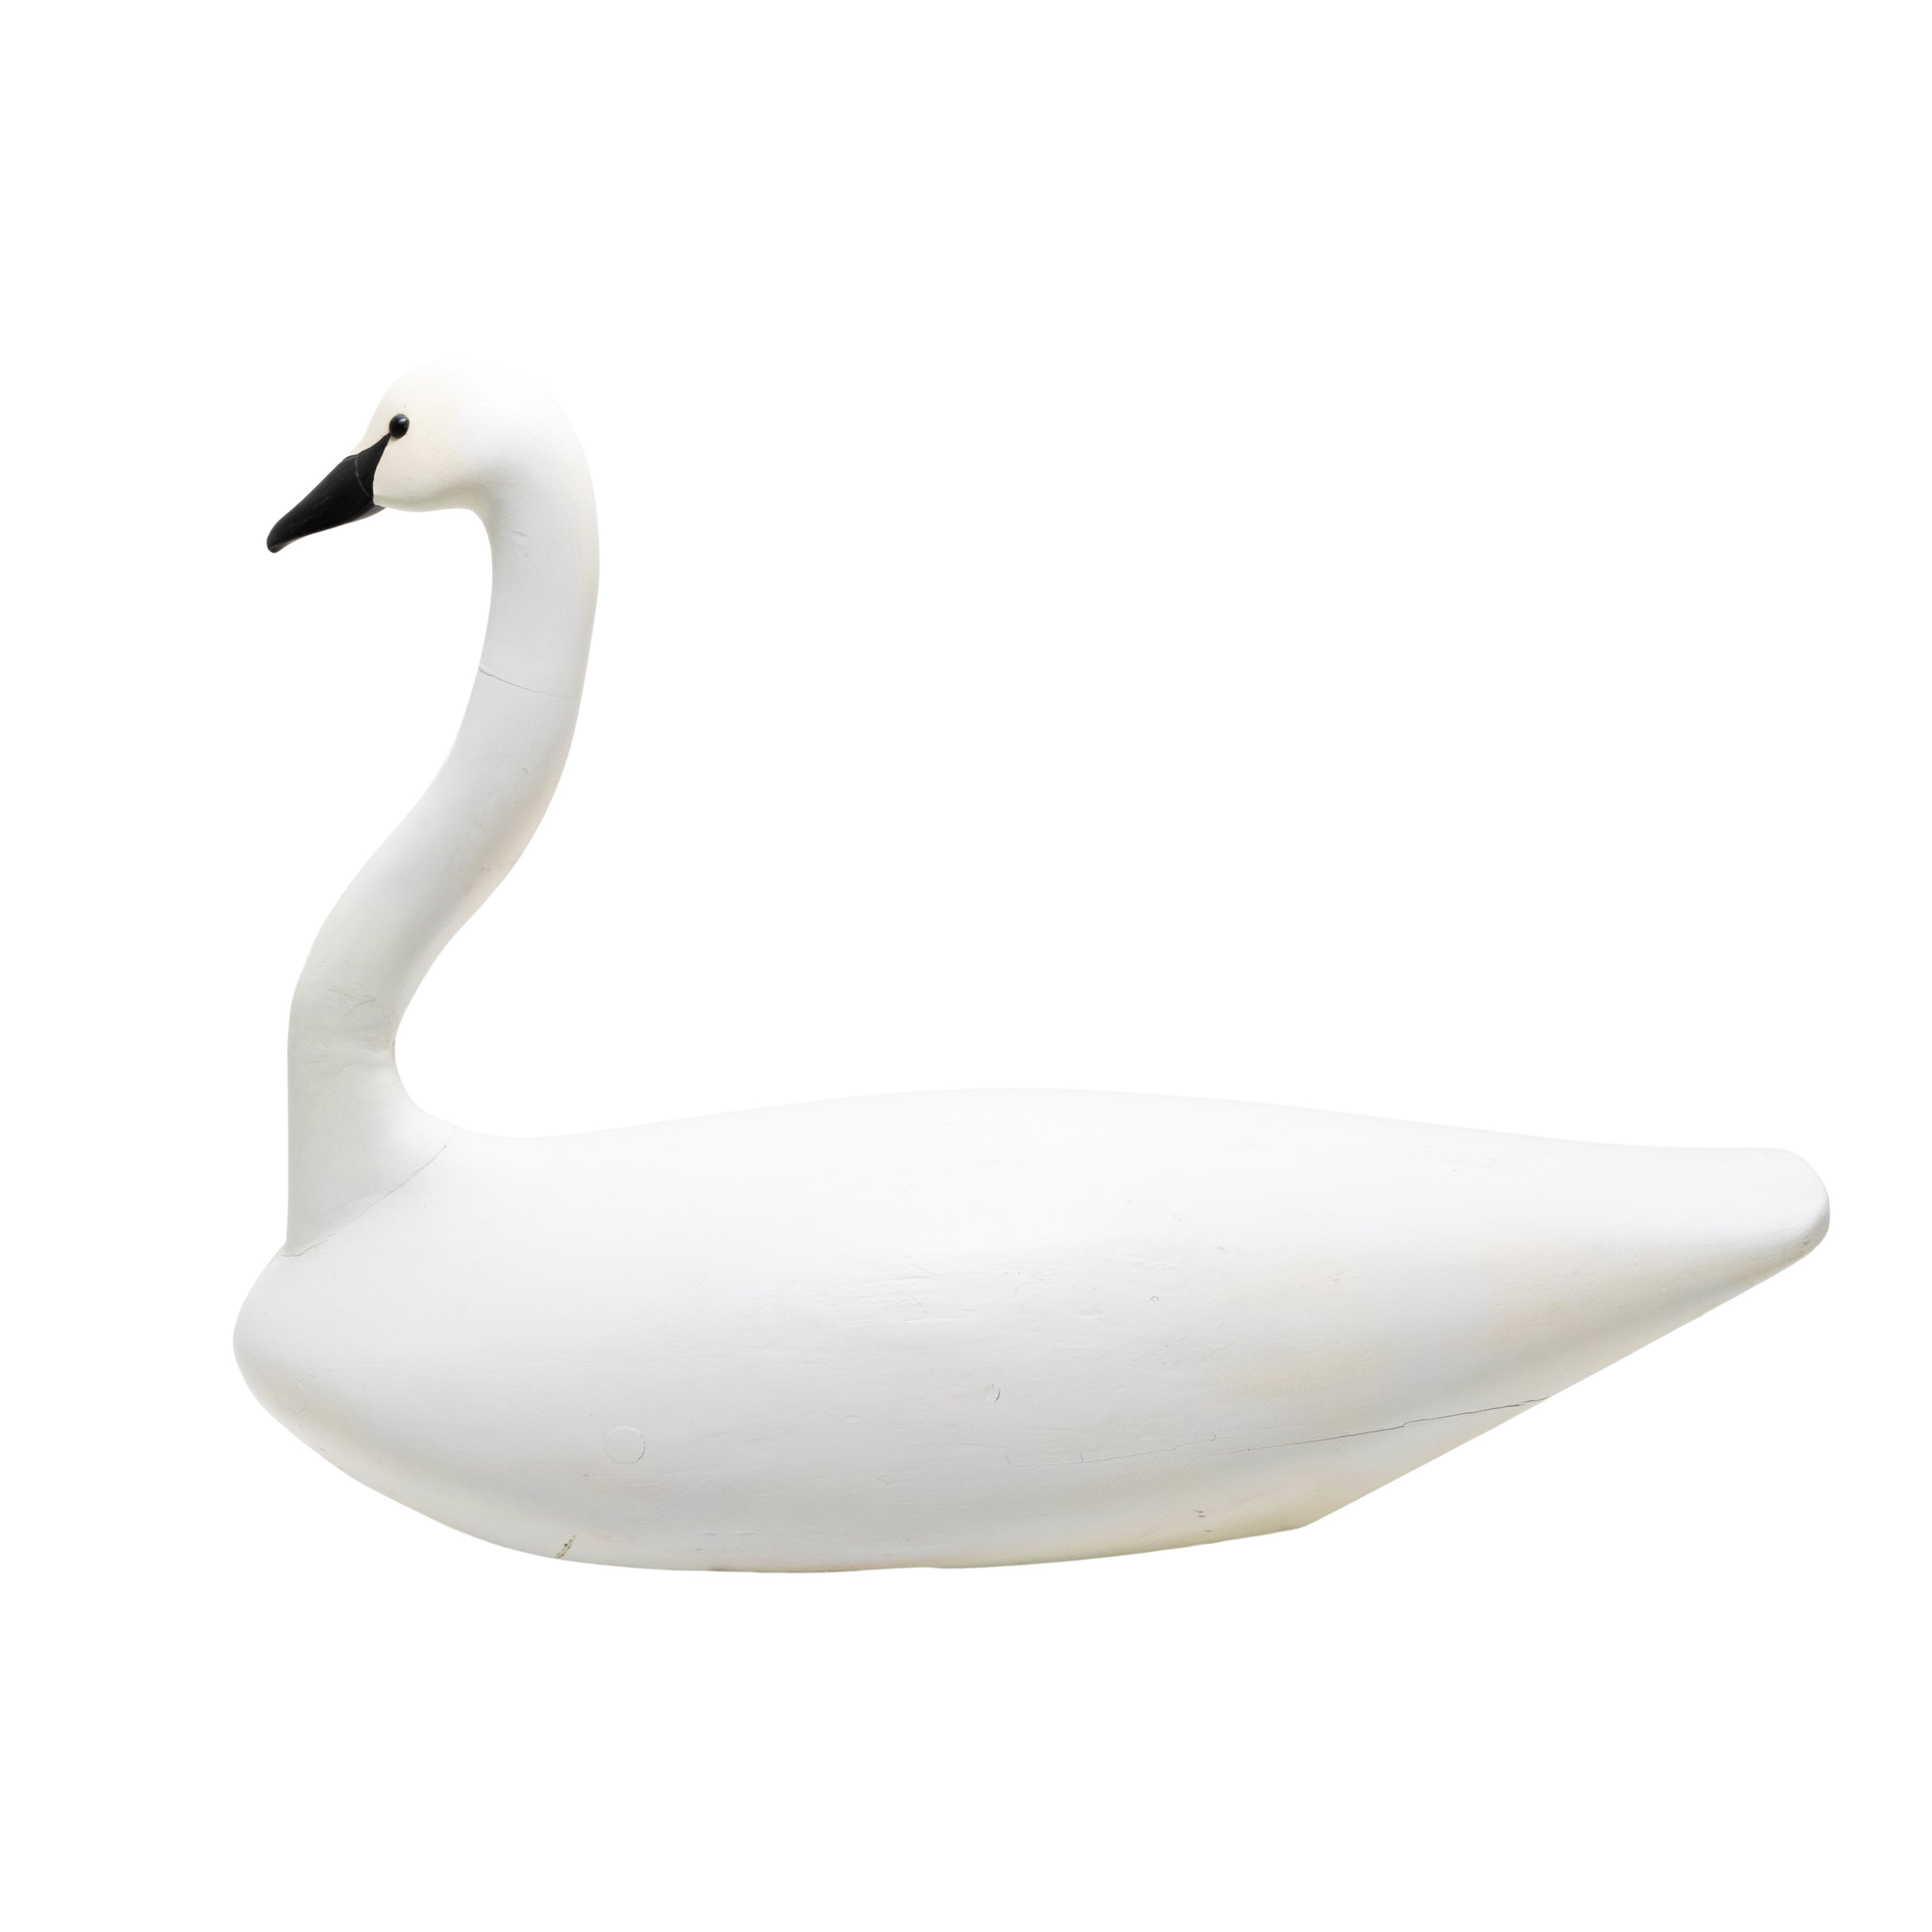 Swan Decoy by Paul Gibson